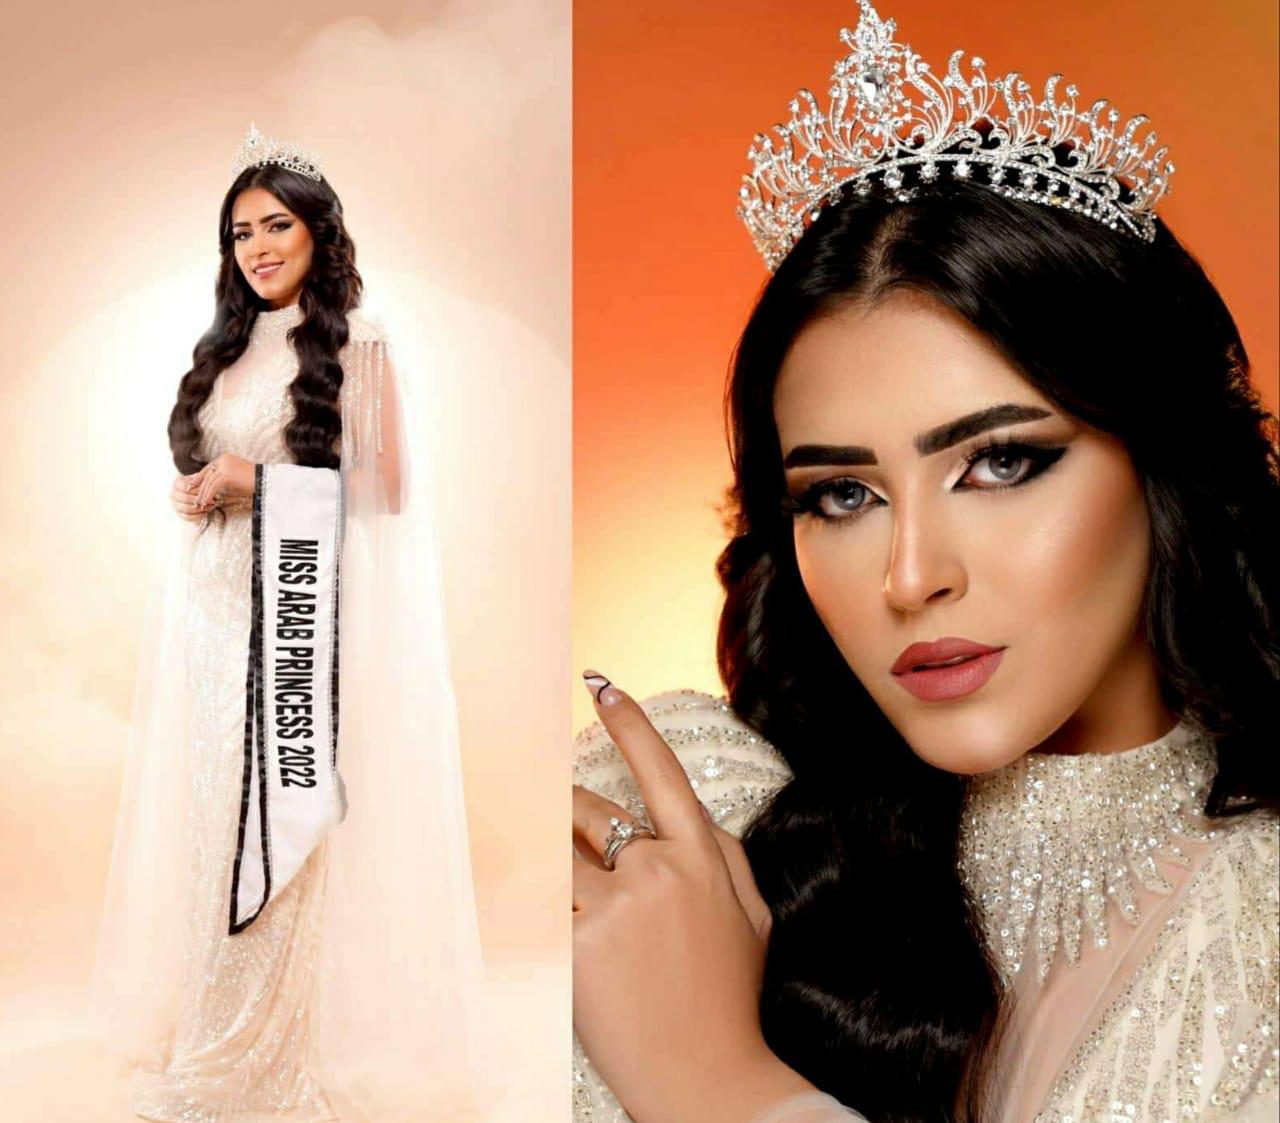 إيمان العشري تفوز بلقب الأميرة العربية لعام 2022 